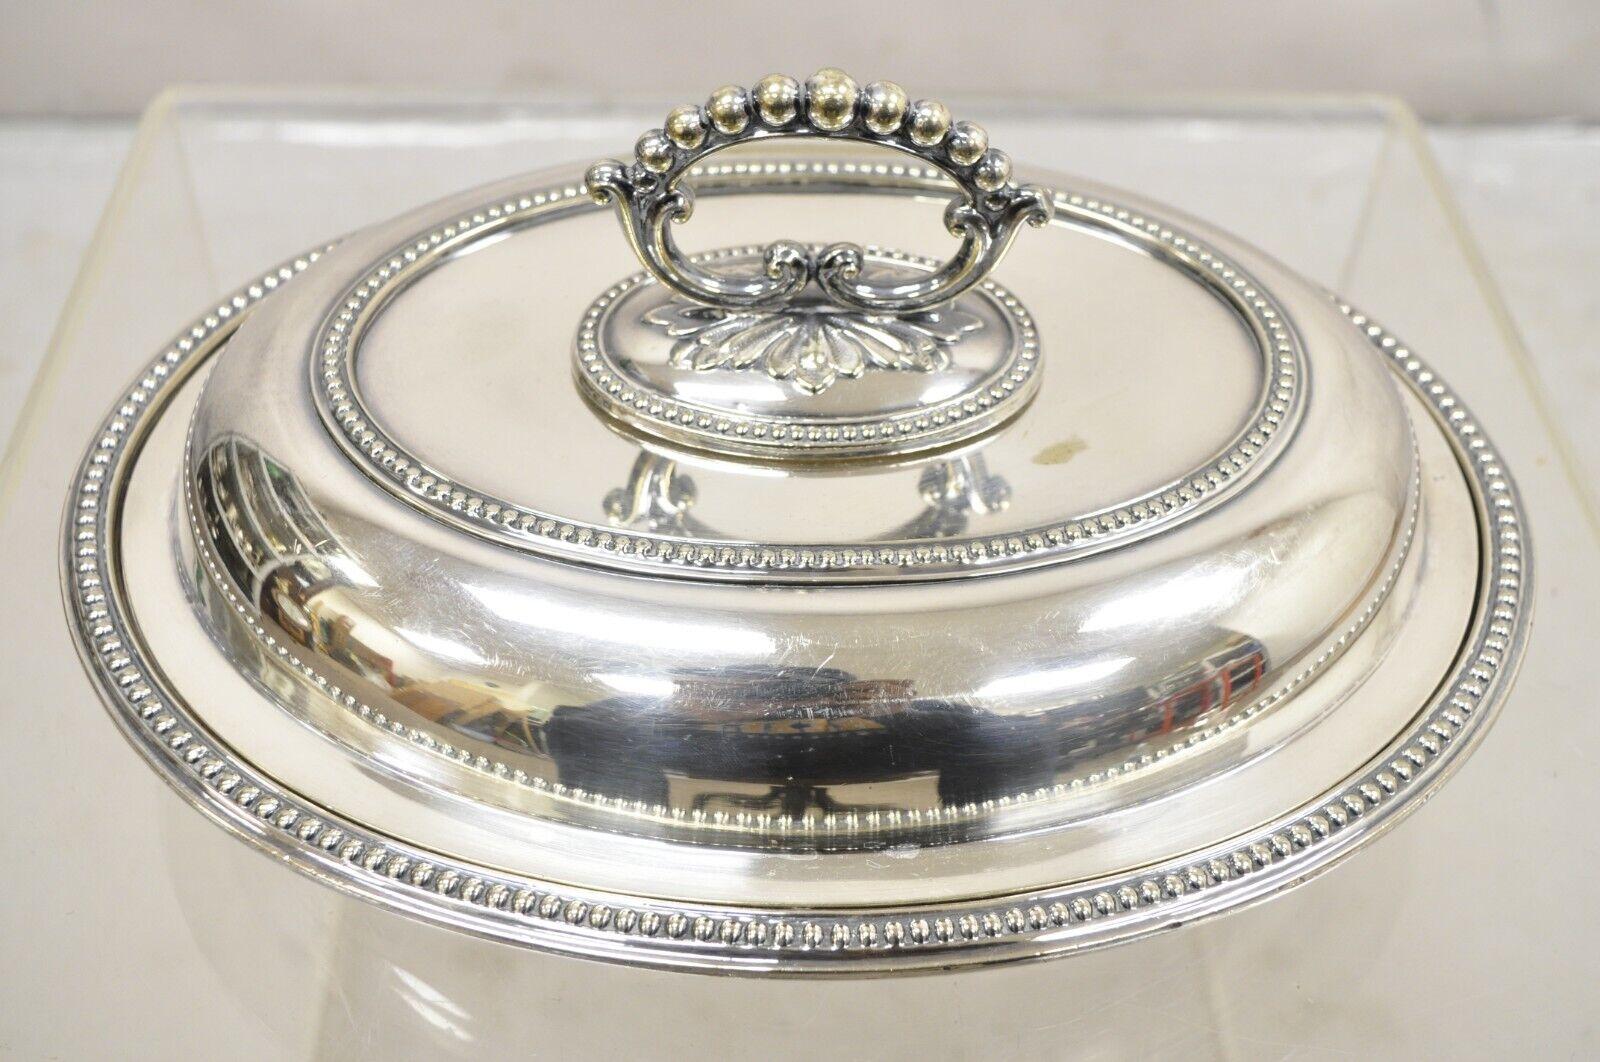 Antique Mappin & Webb's Prince's Plate English Sheffield Silver Plated Covered Serving Dish. L'objet est doté d'une poignée amovible ornée, d'une forme ovale et d'un poinçon d'origine. Circa Early 20th Century. Dimensions : 6